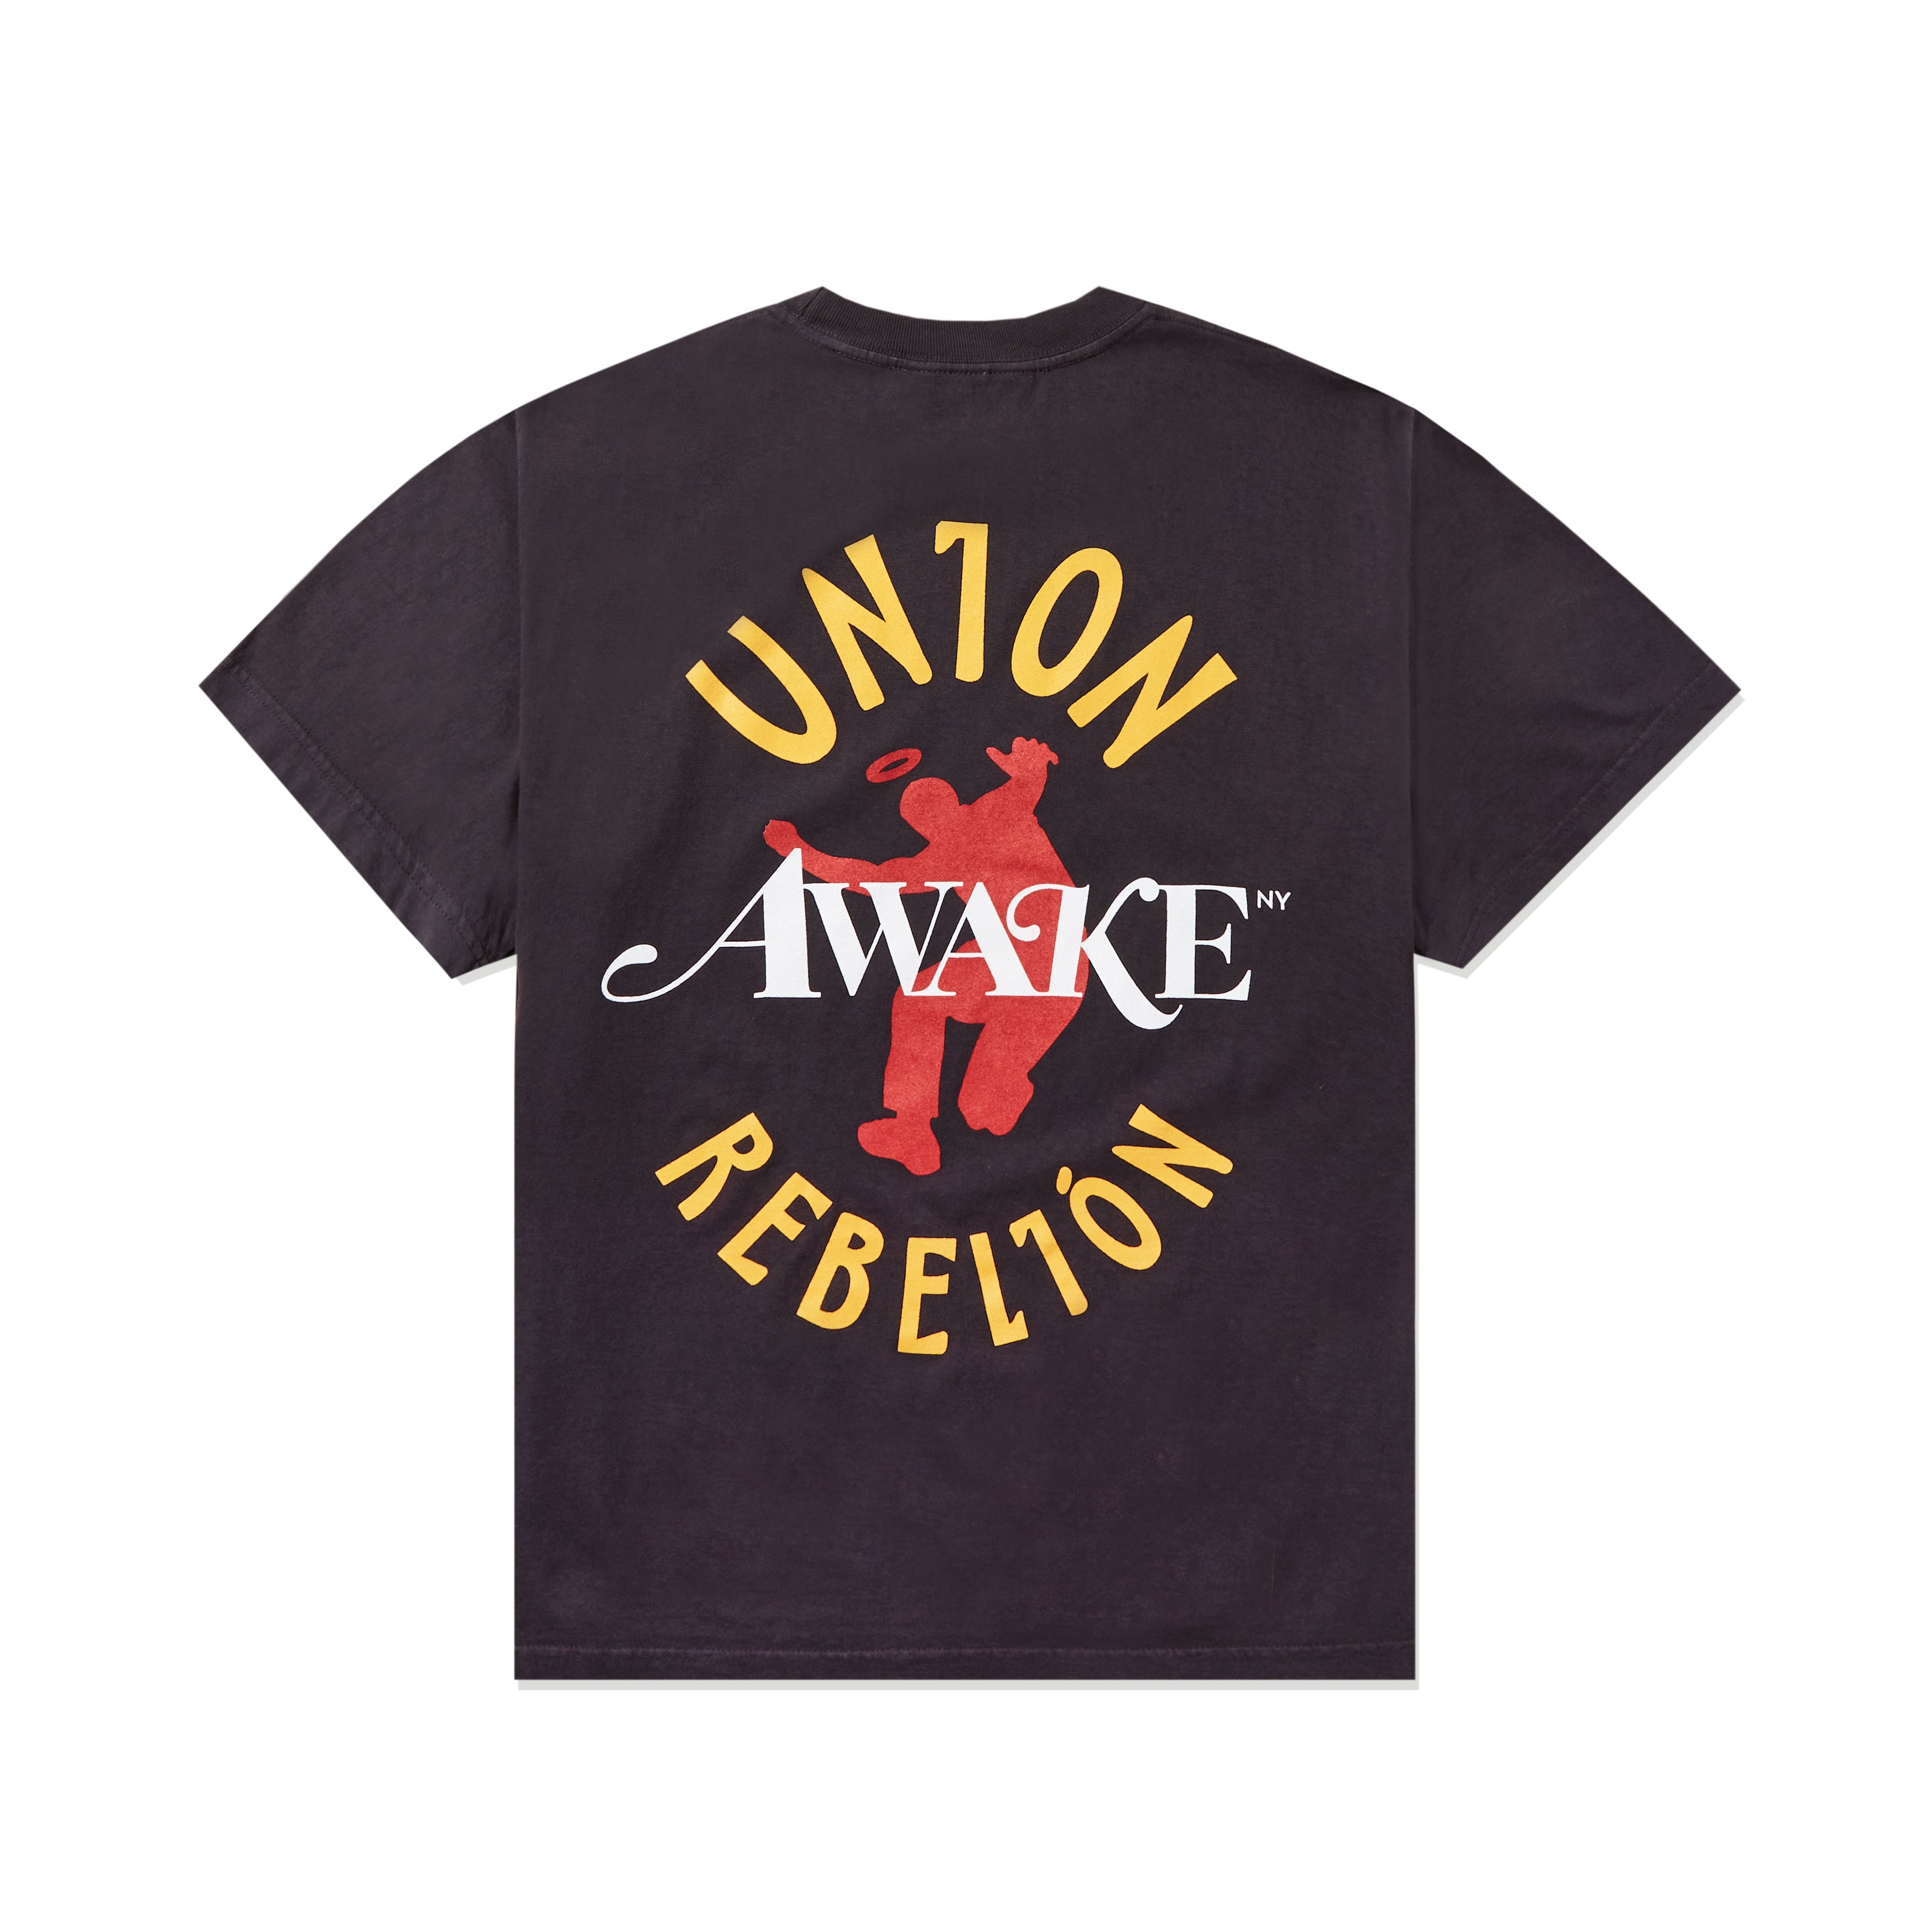 Awake NY x Union LA Rebelión Tee